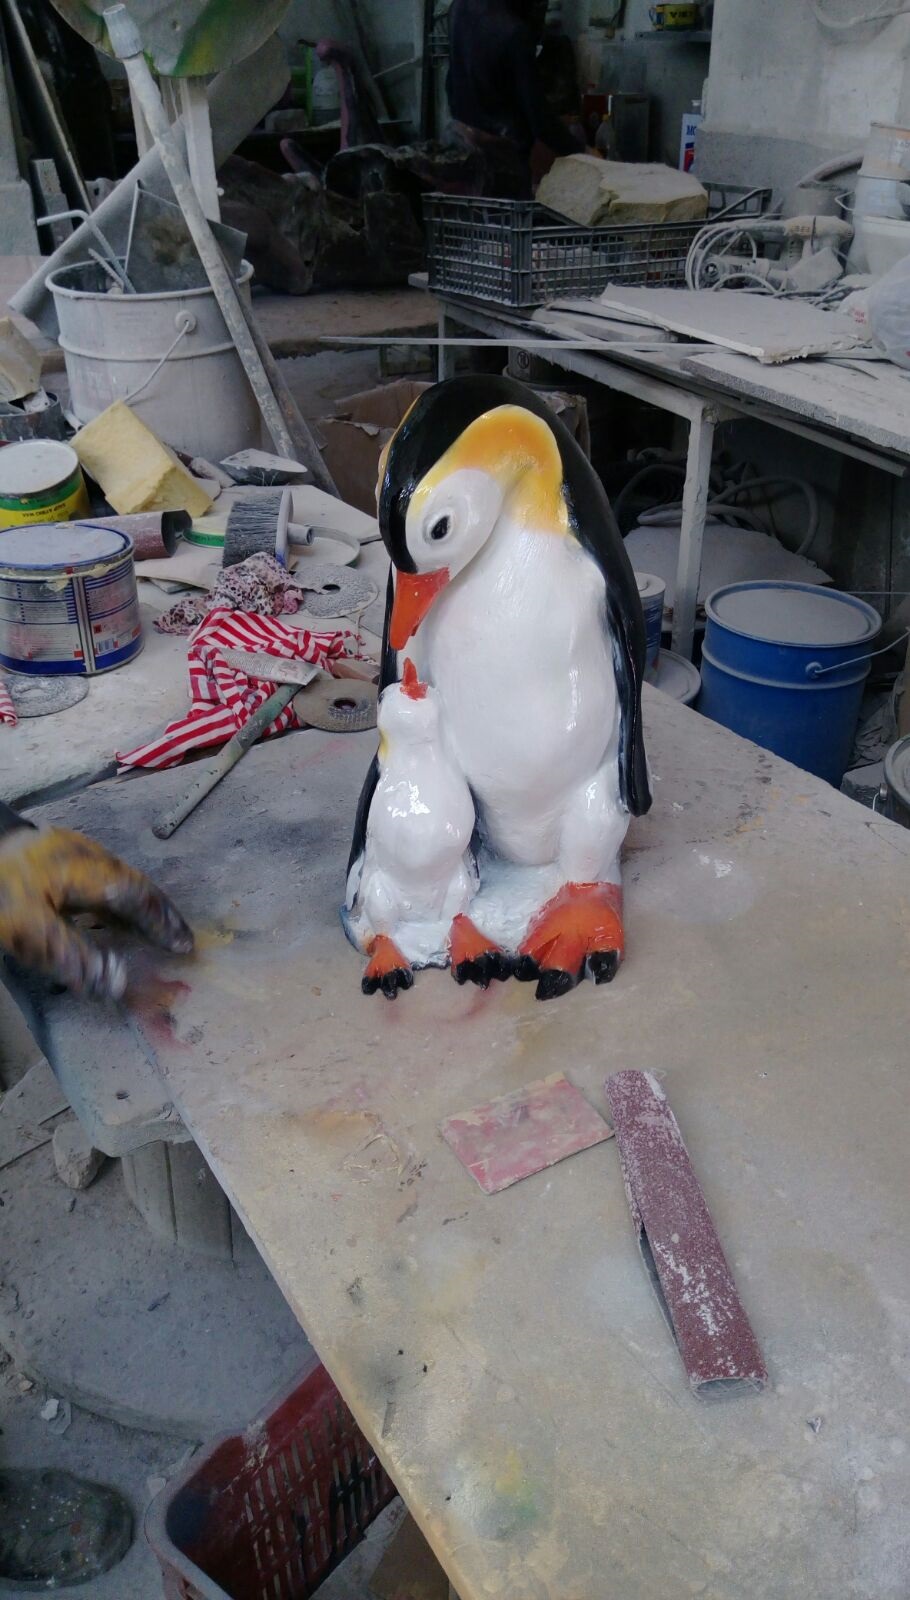 kutup penguen: promit en.18 boy.25 yüks.40 ağr.4